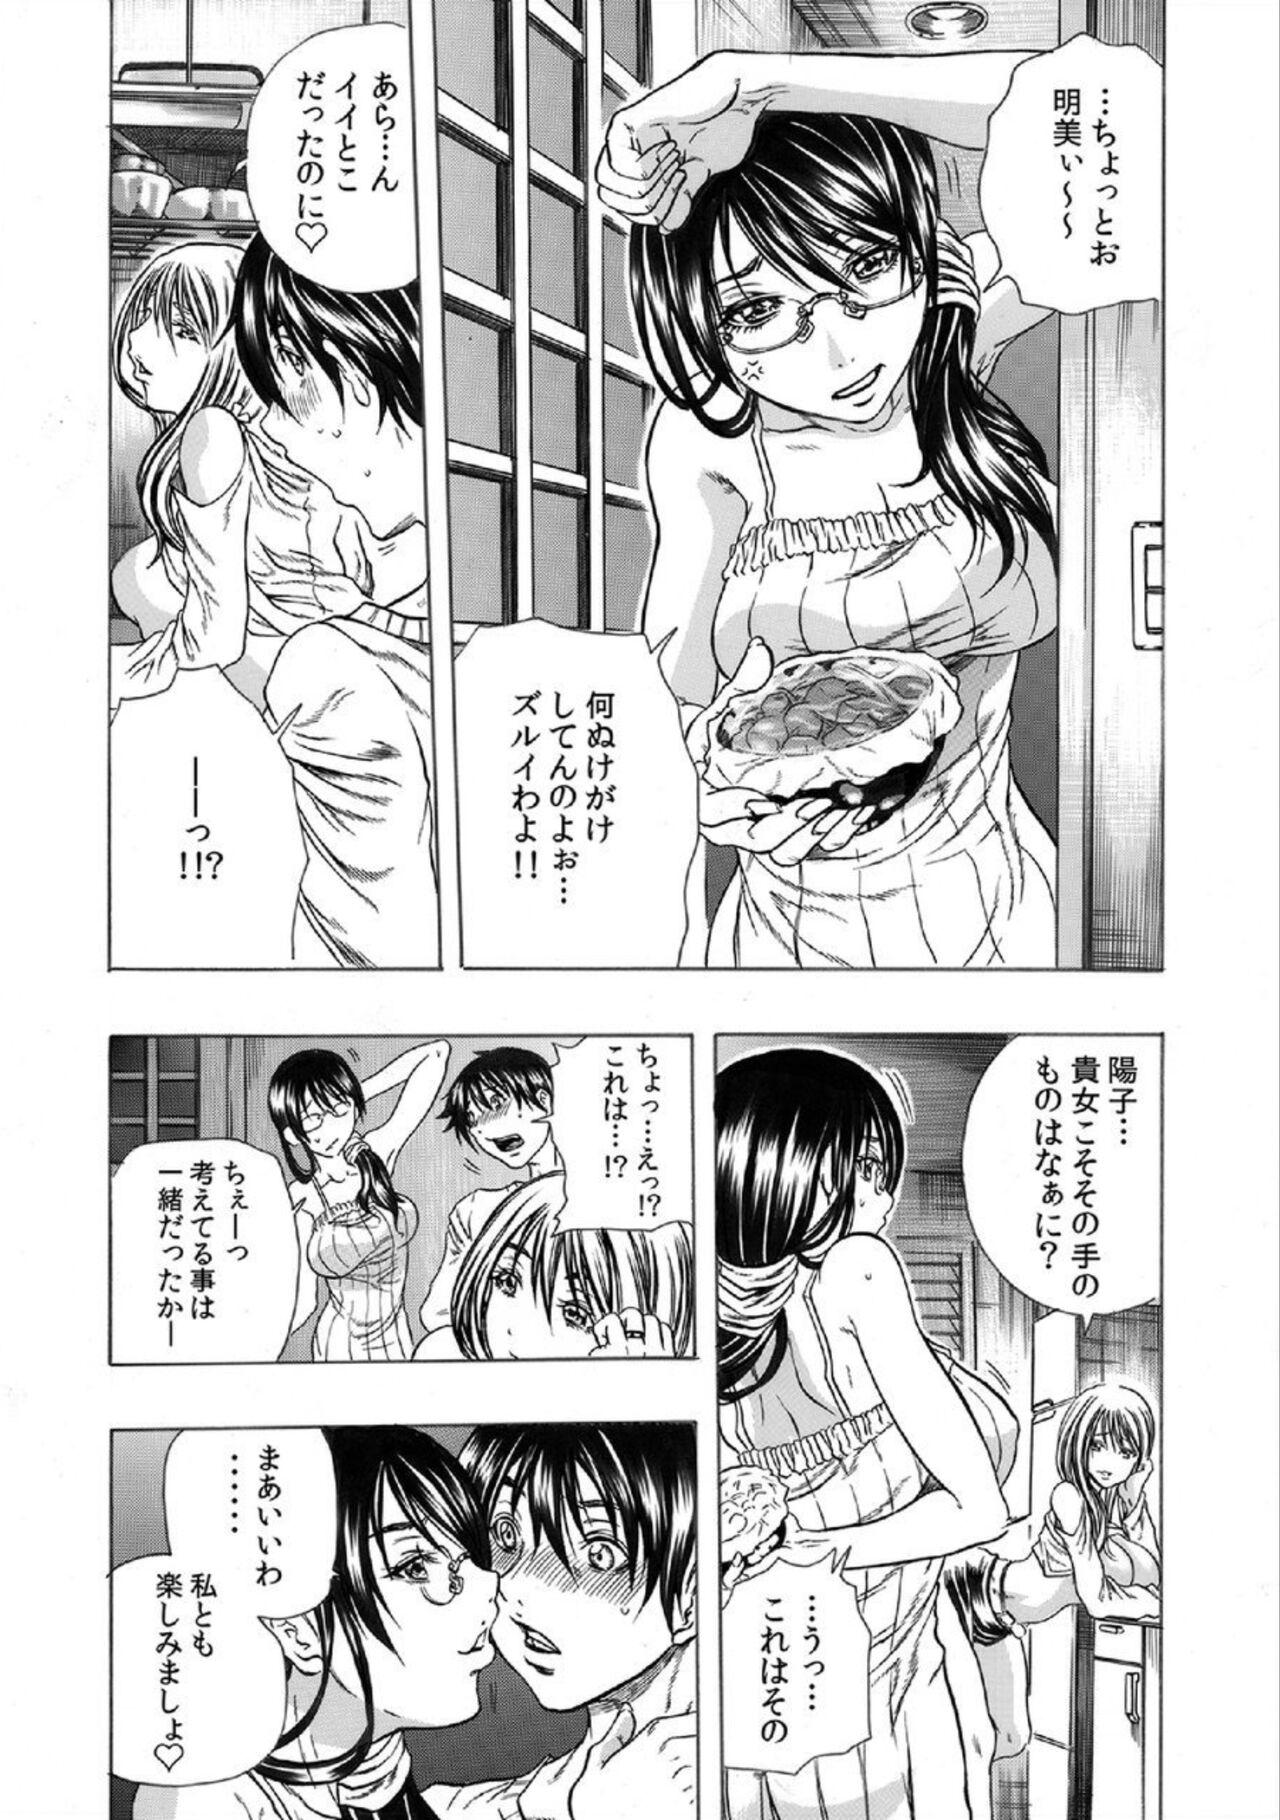 Masturbation Tonarinookusan O Kachiku Ni Suru 13 No Hōhō 1 Maledom - Page 9